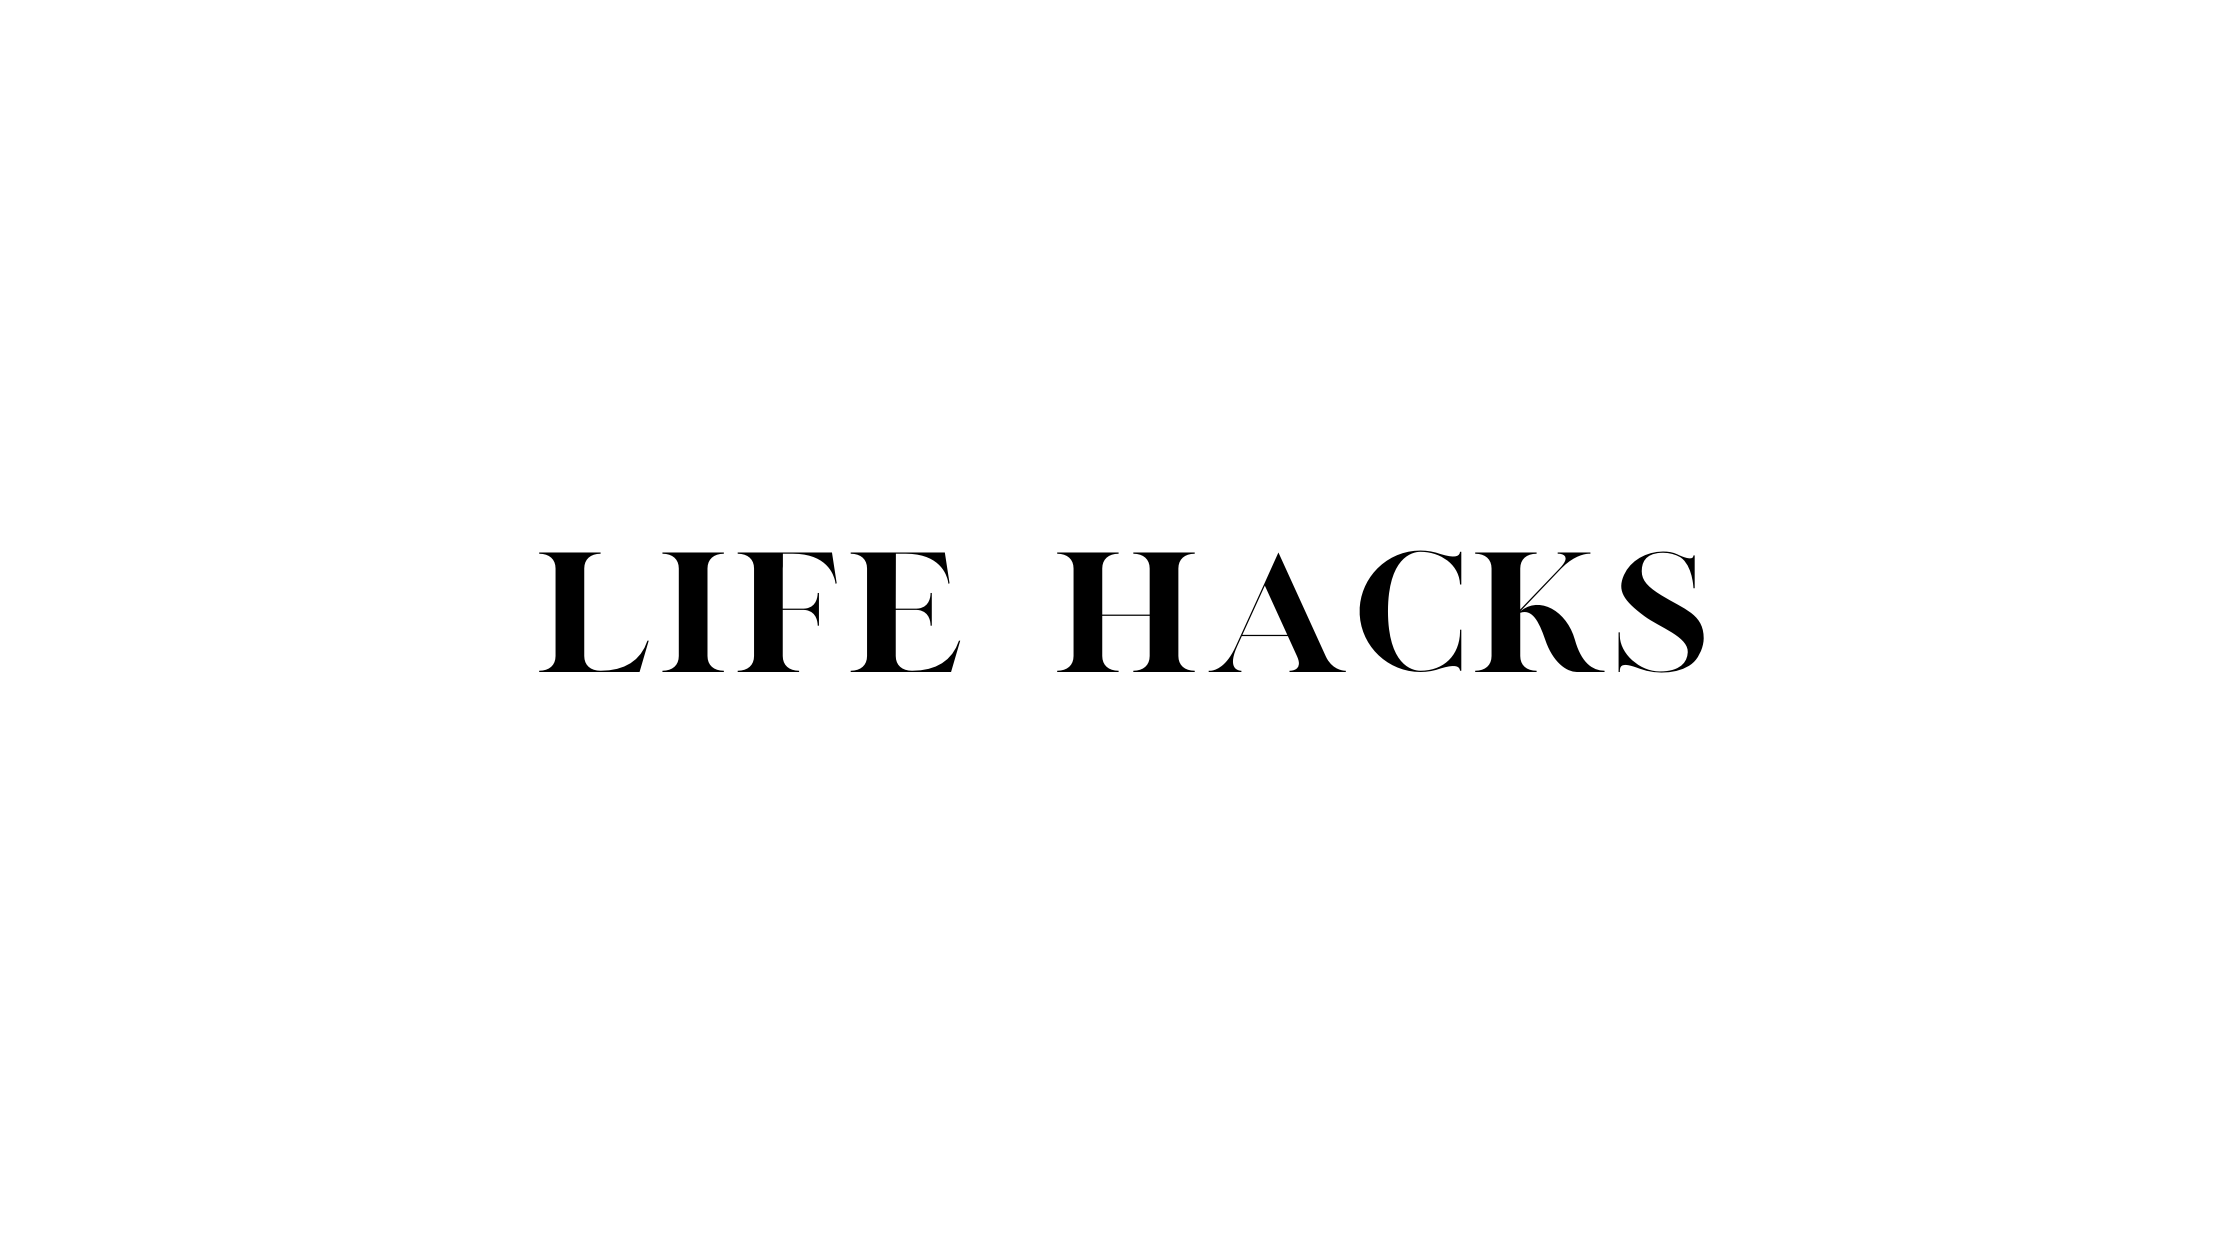 Life Hacks for Women